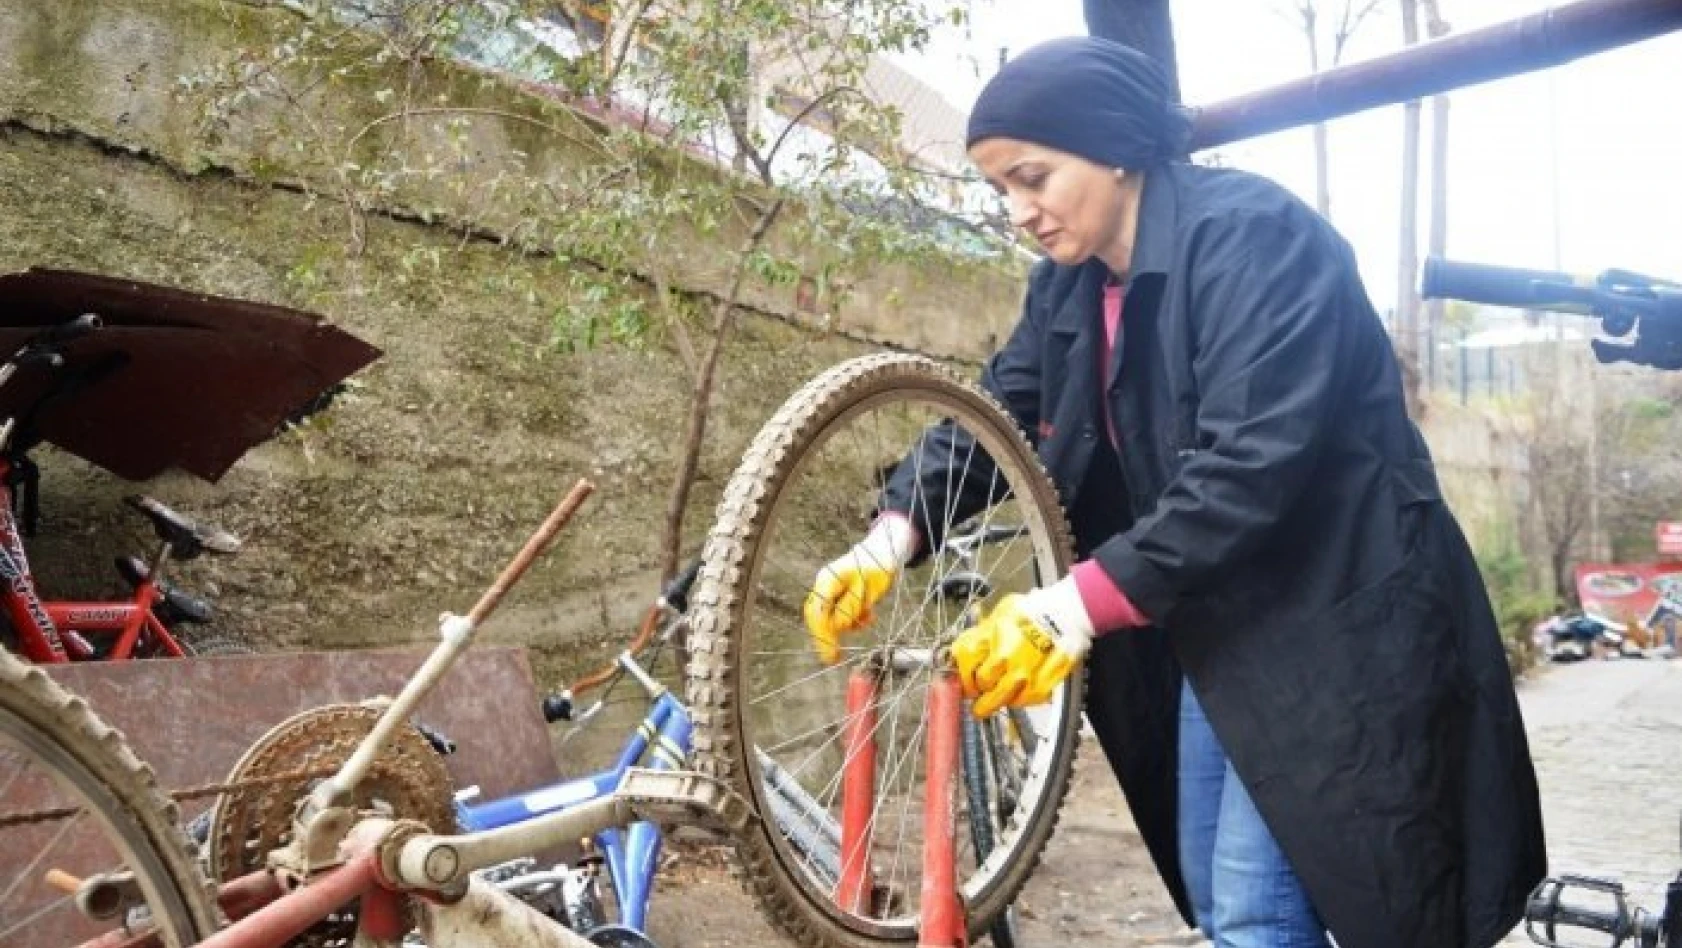 Bisiklet tamiri için eşine yardımcı olan kadın, usta oldu